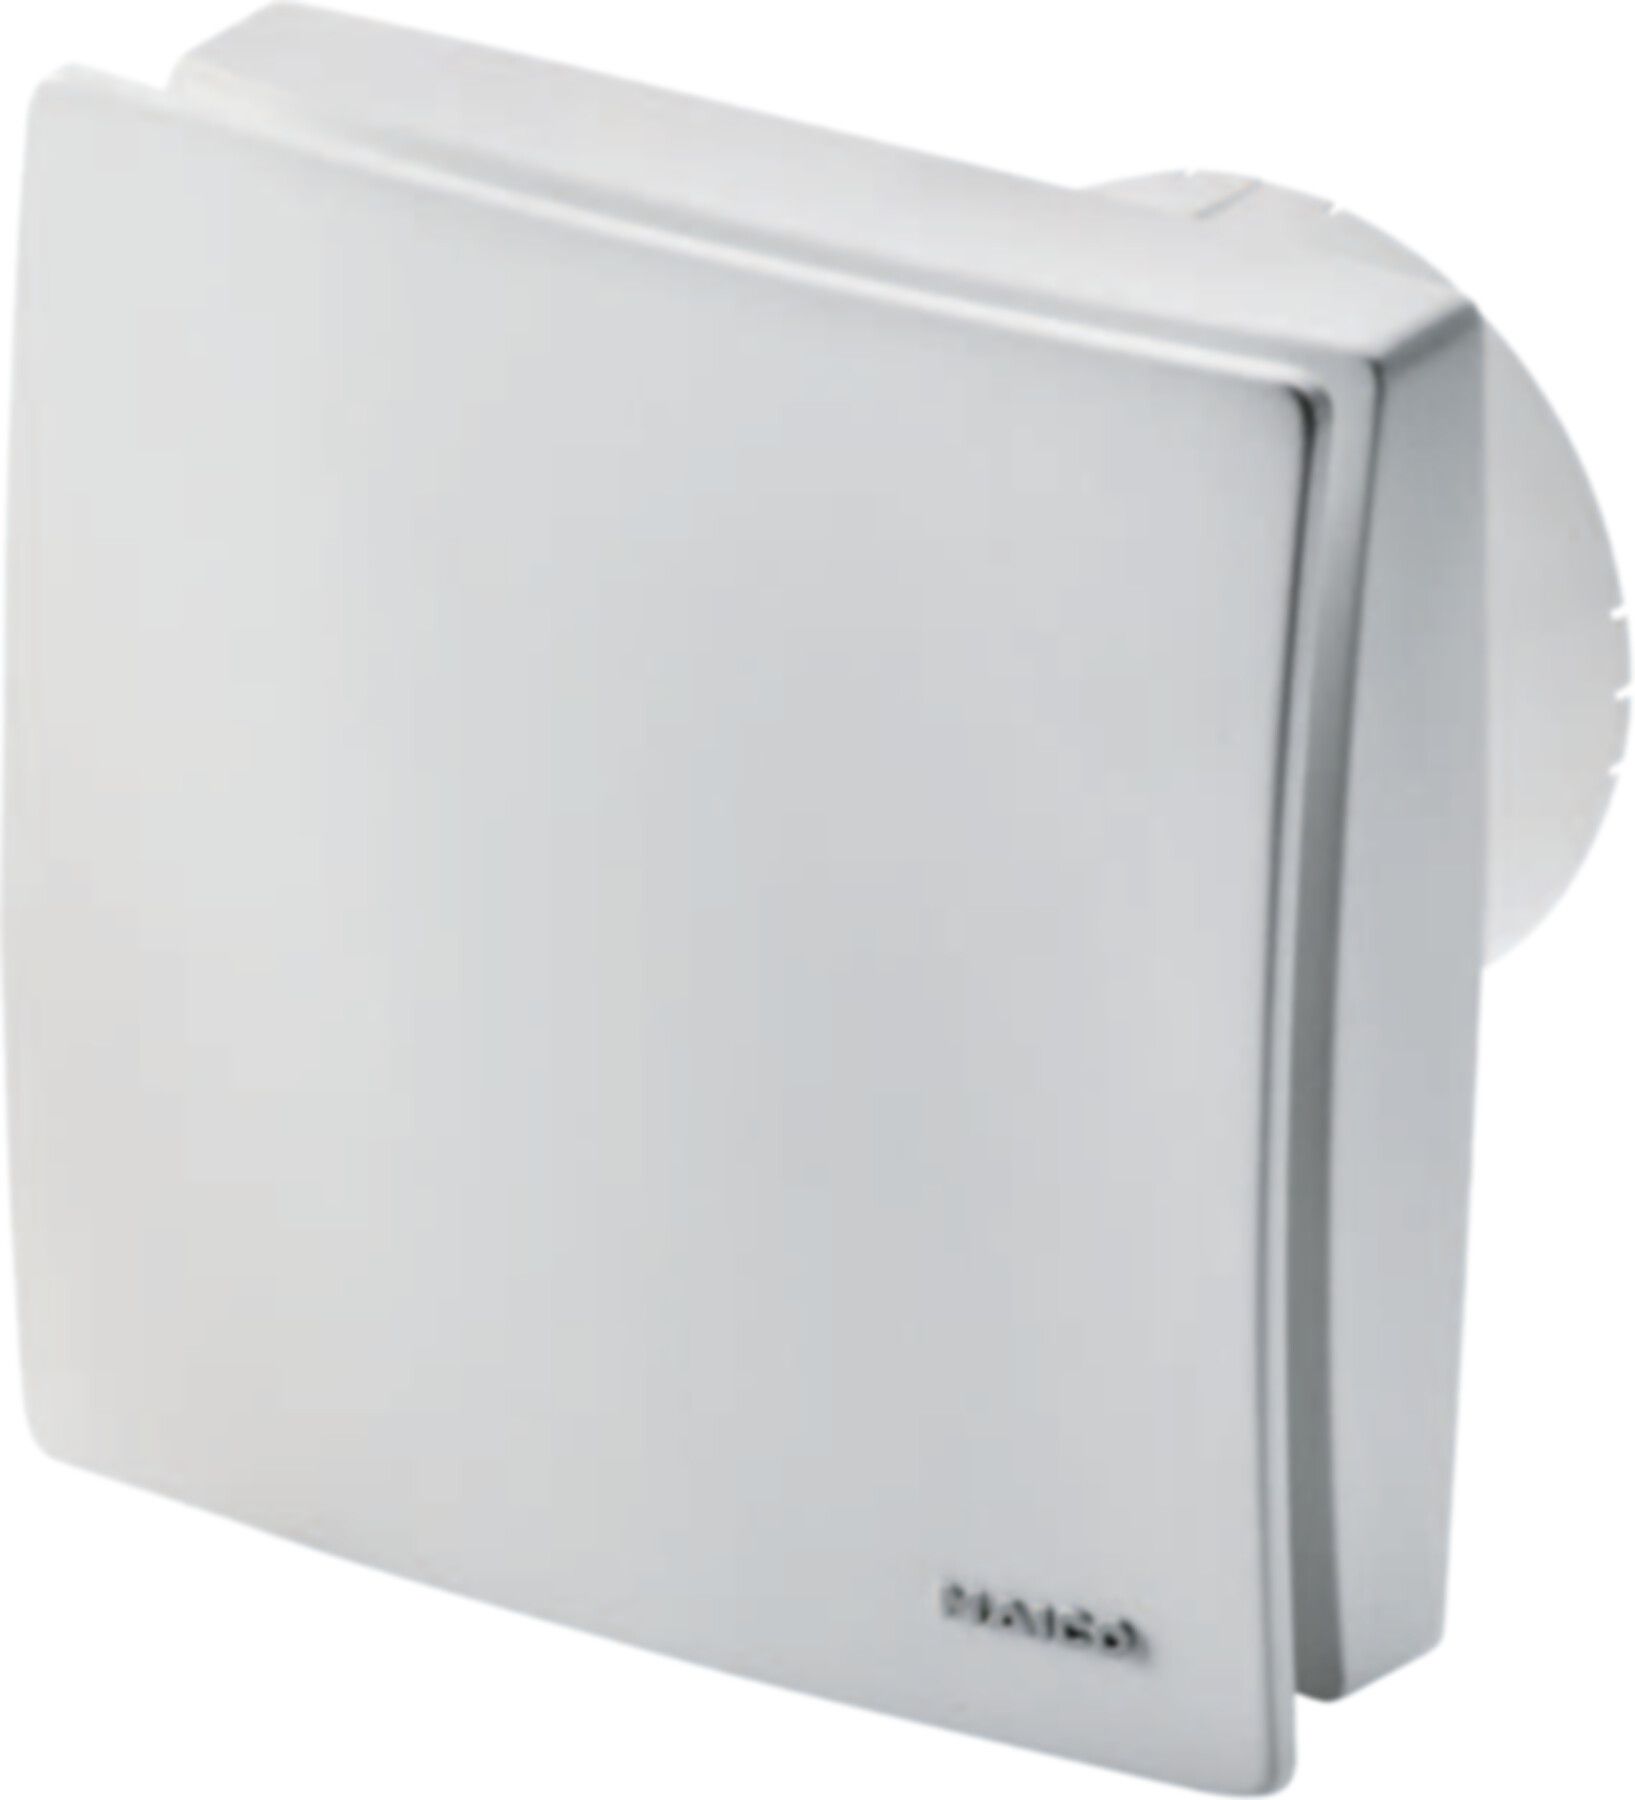 Bad / WC-Ventilatoren COMPETAIR Maico ECA 100 ipro VZC